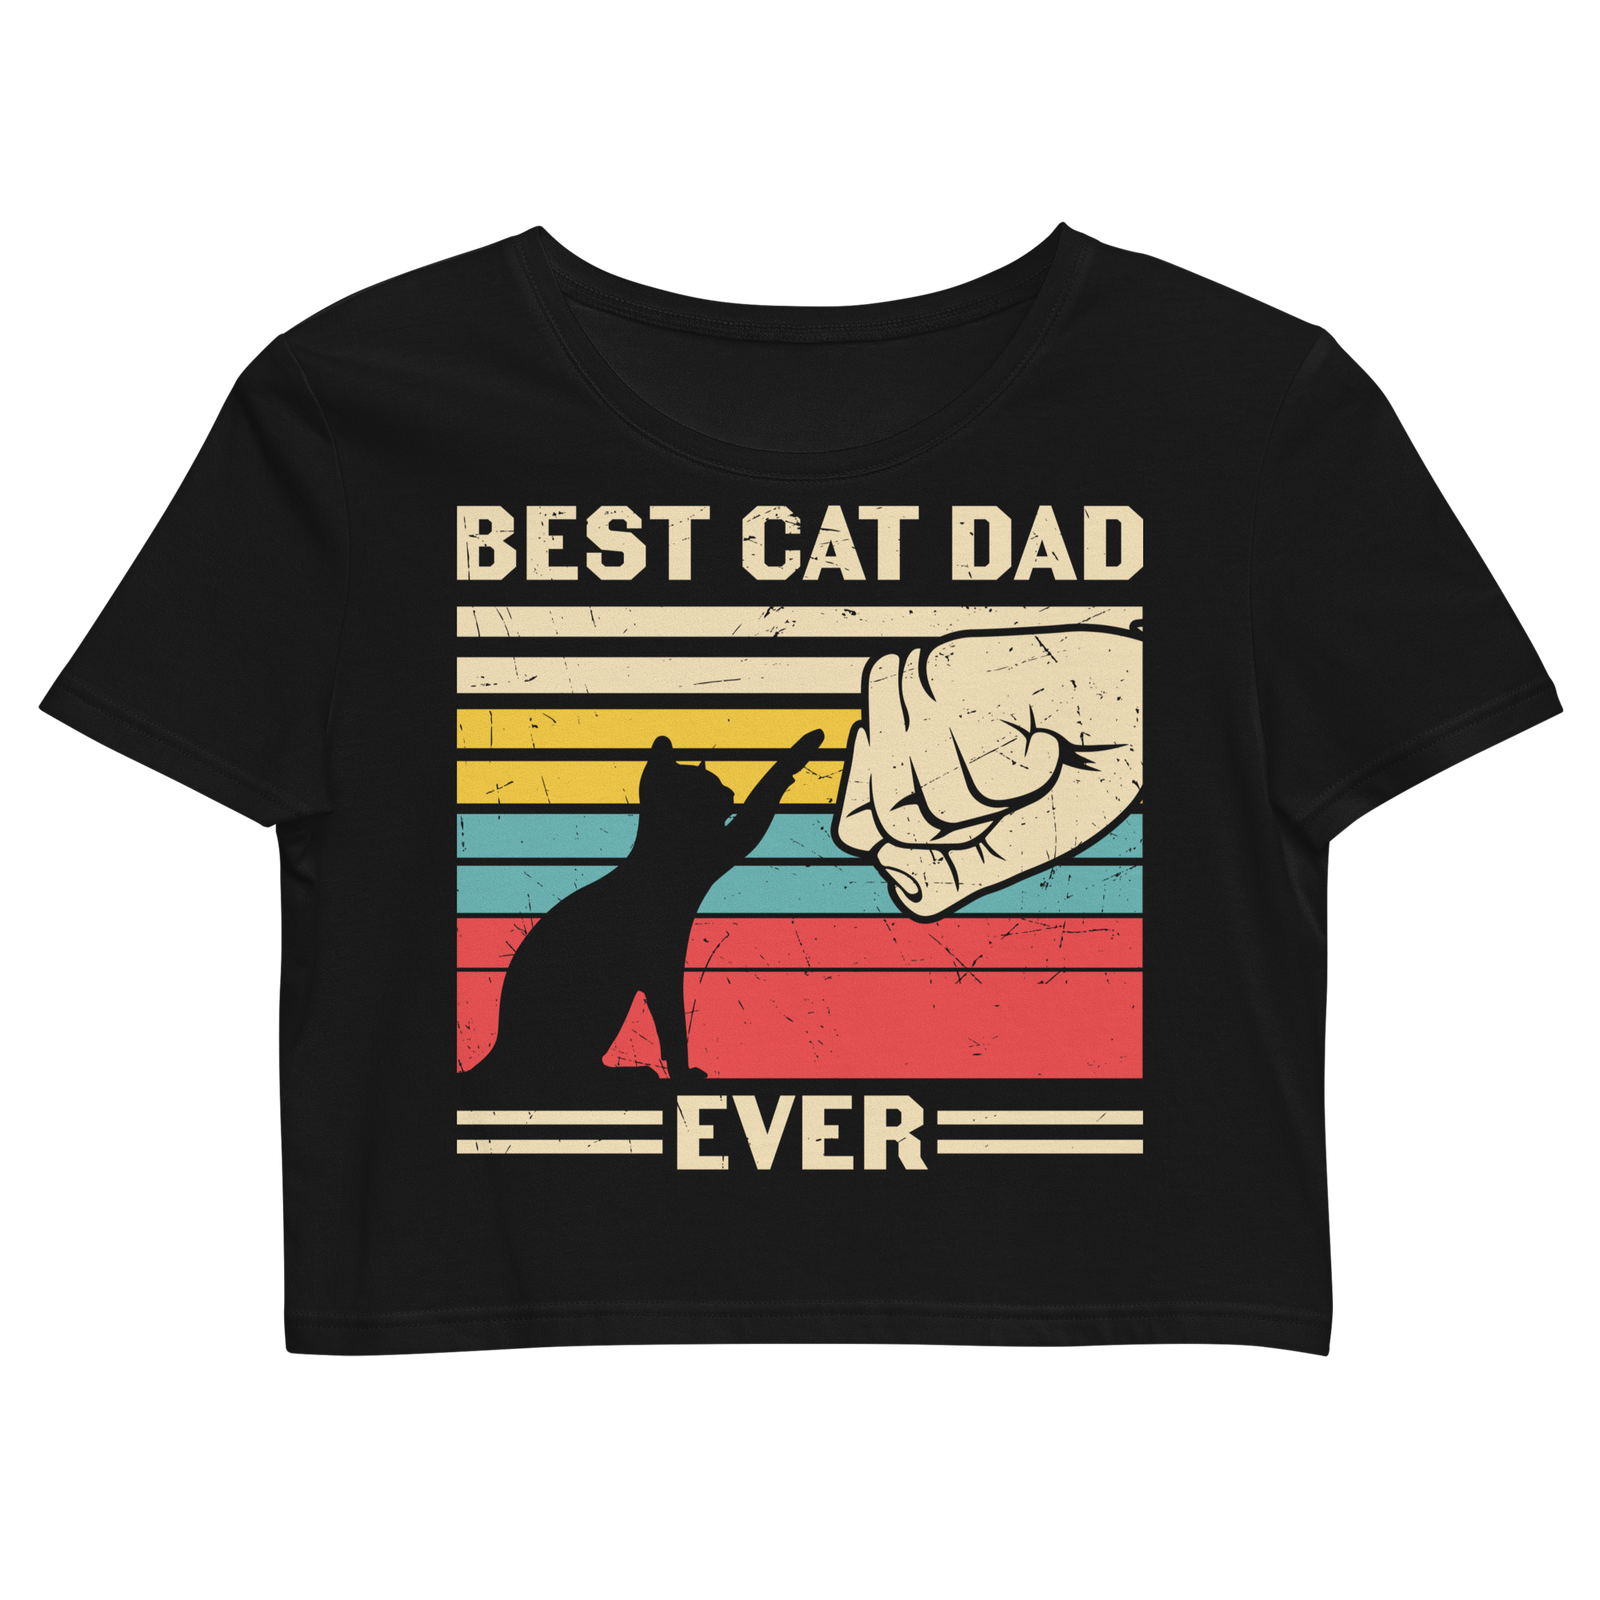 Best Cat Dad Ever - Organic Crop Top